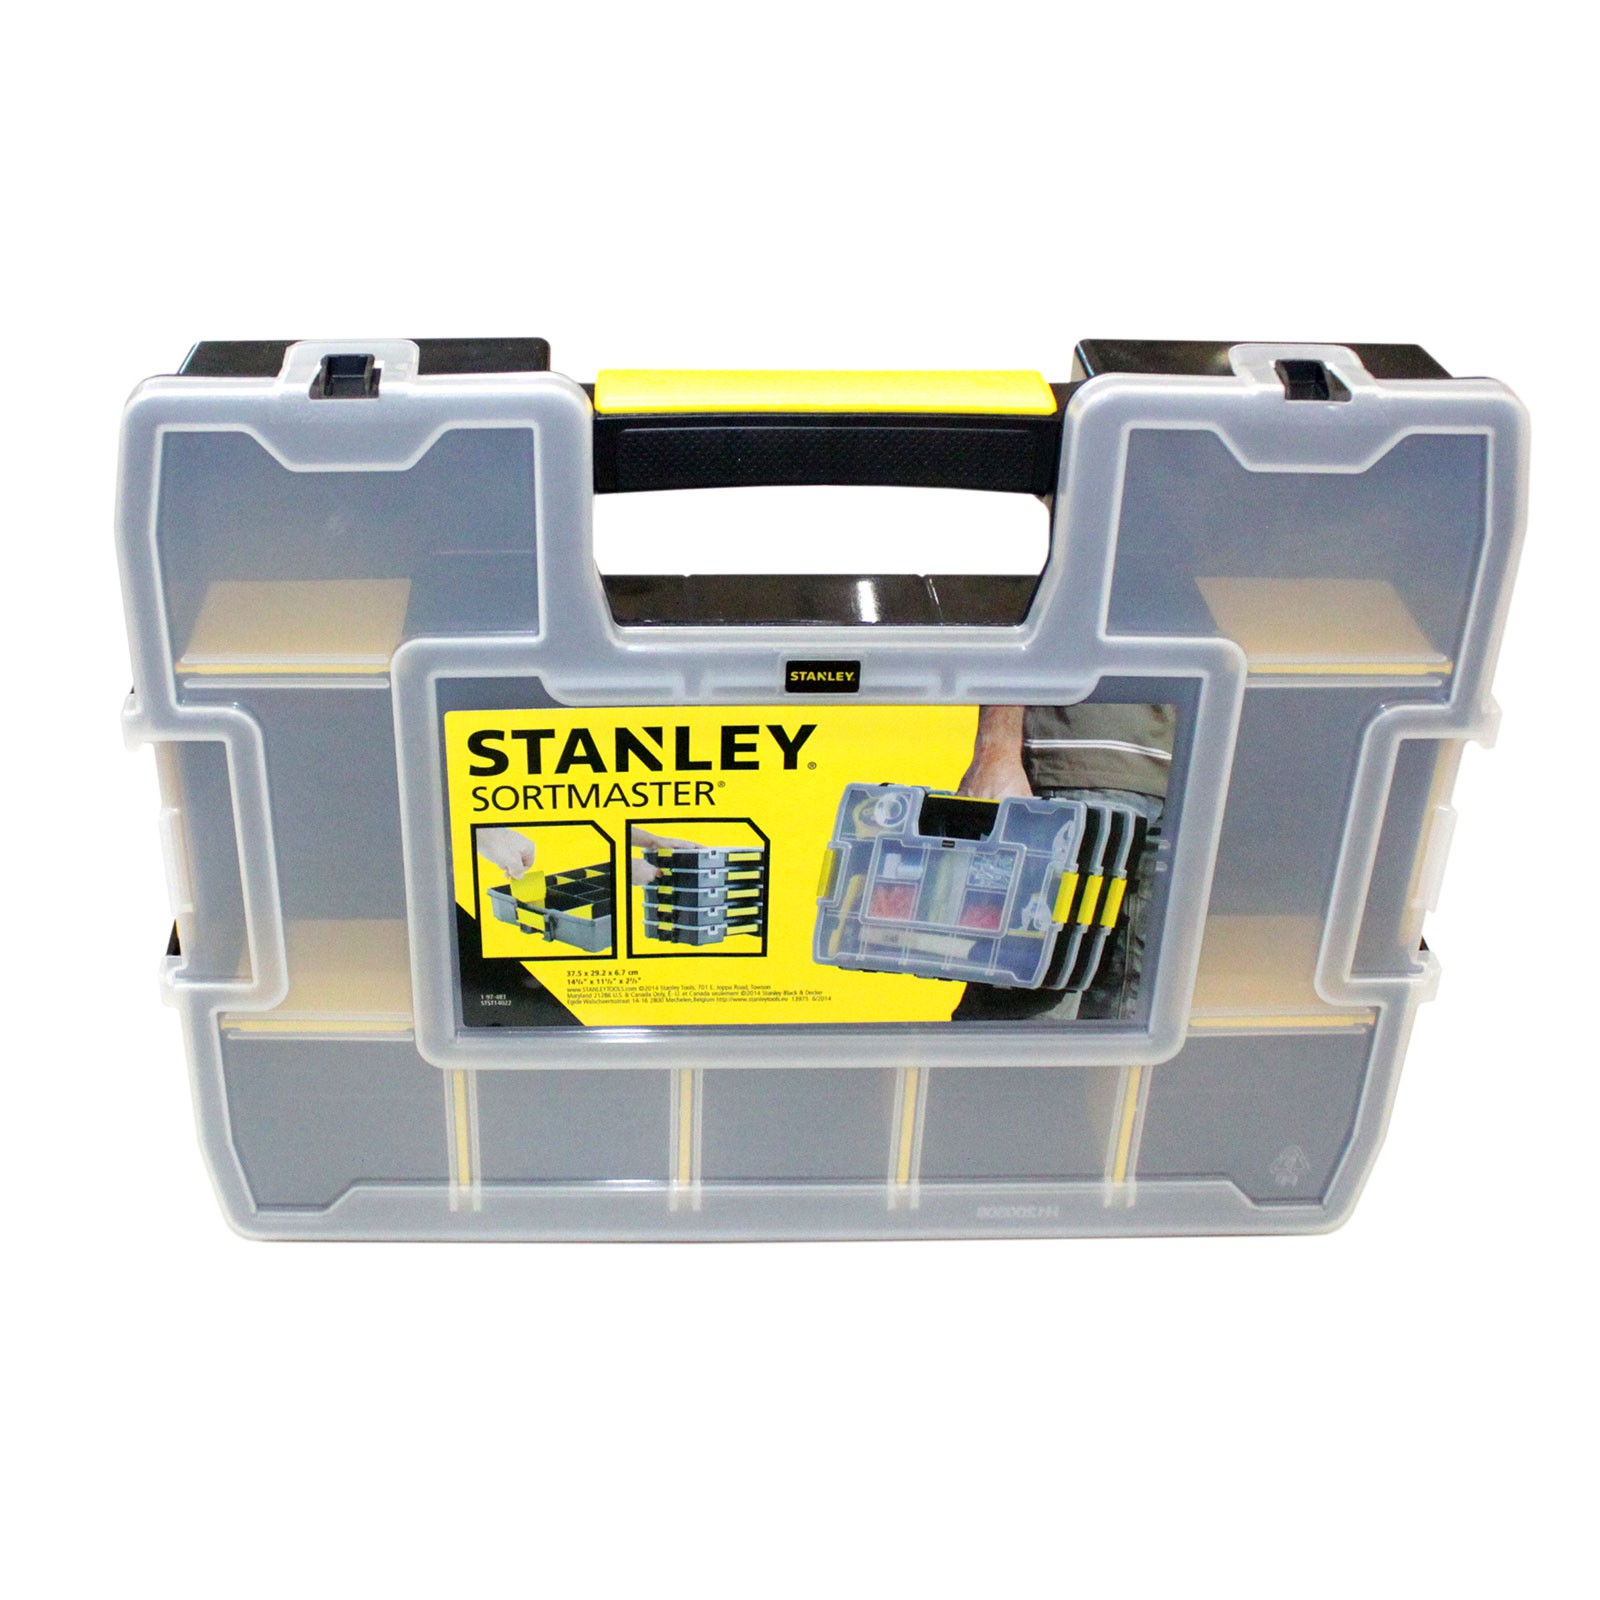 STANLEY Organizer 1-97-483 SortMaster Junior - Sortimentskasten mit 14 Fächern von STANLEY®